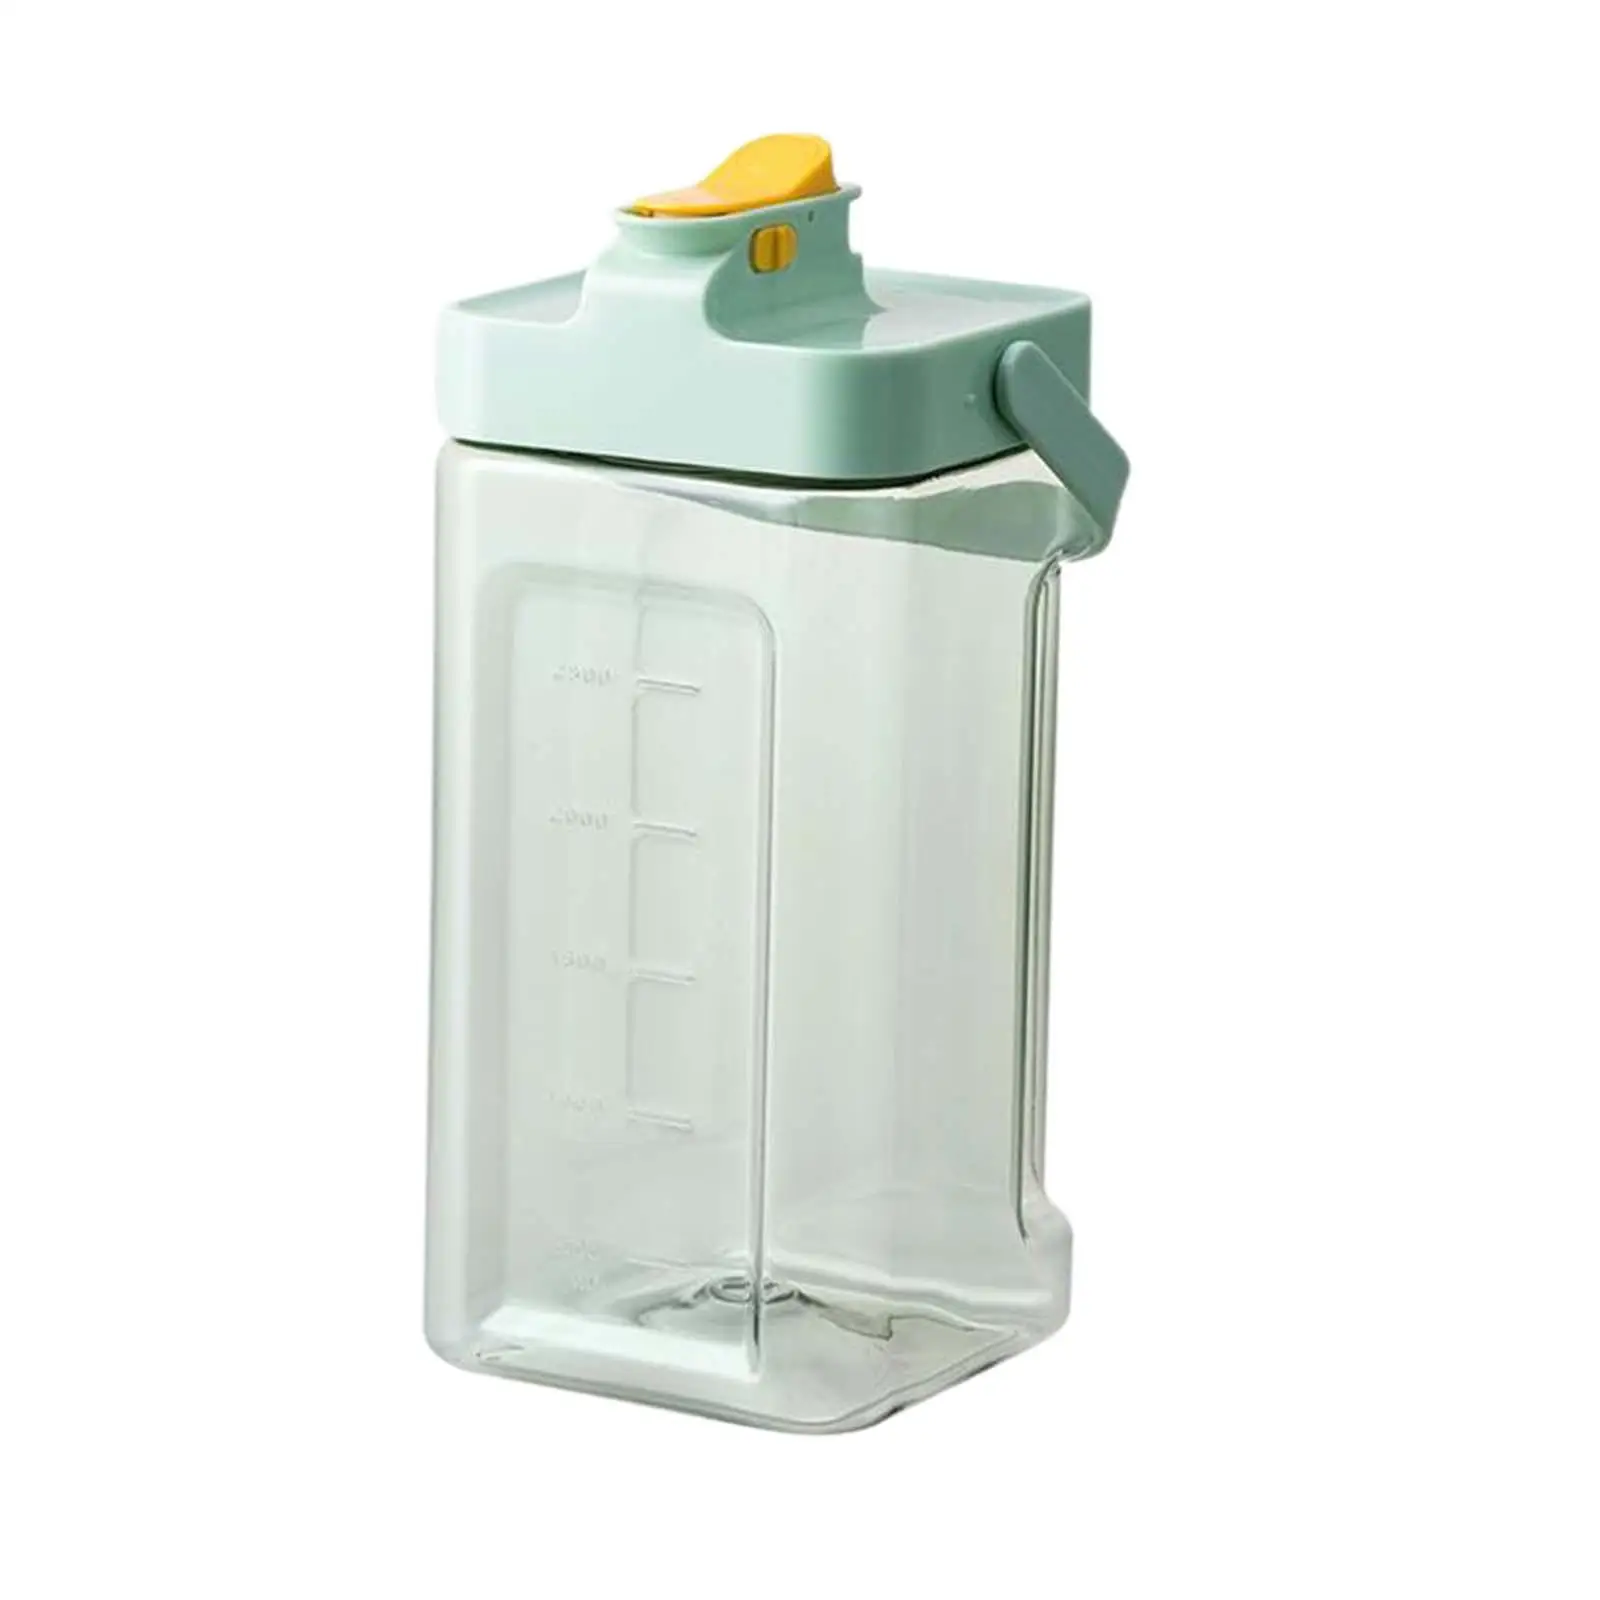 Fruit Juice Jug Water Jug Cold Kettle for Household Living Room Refrigerator